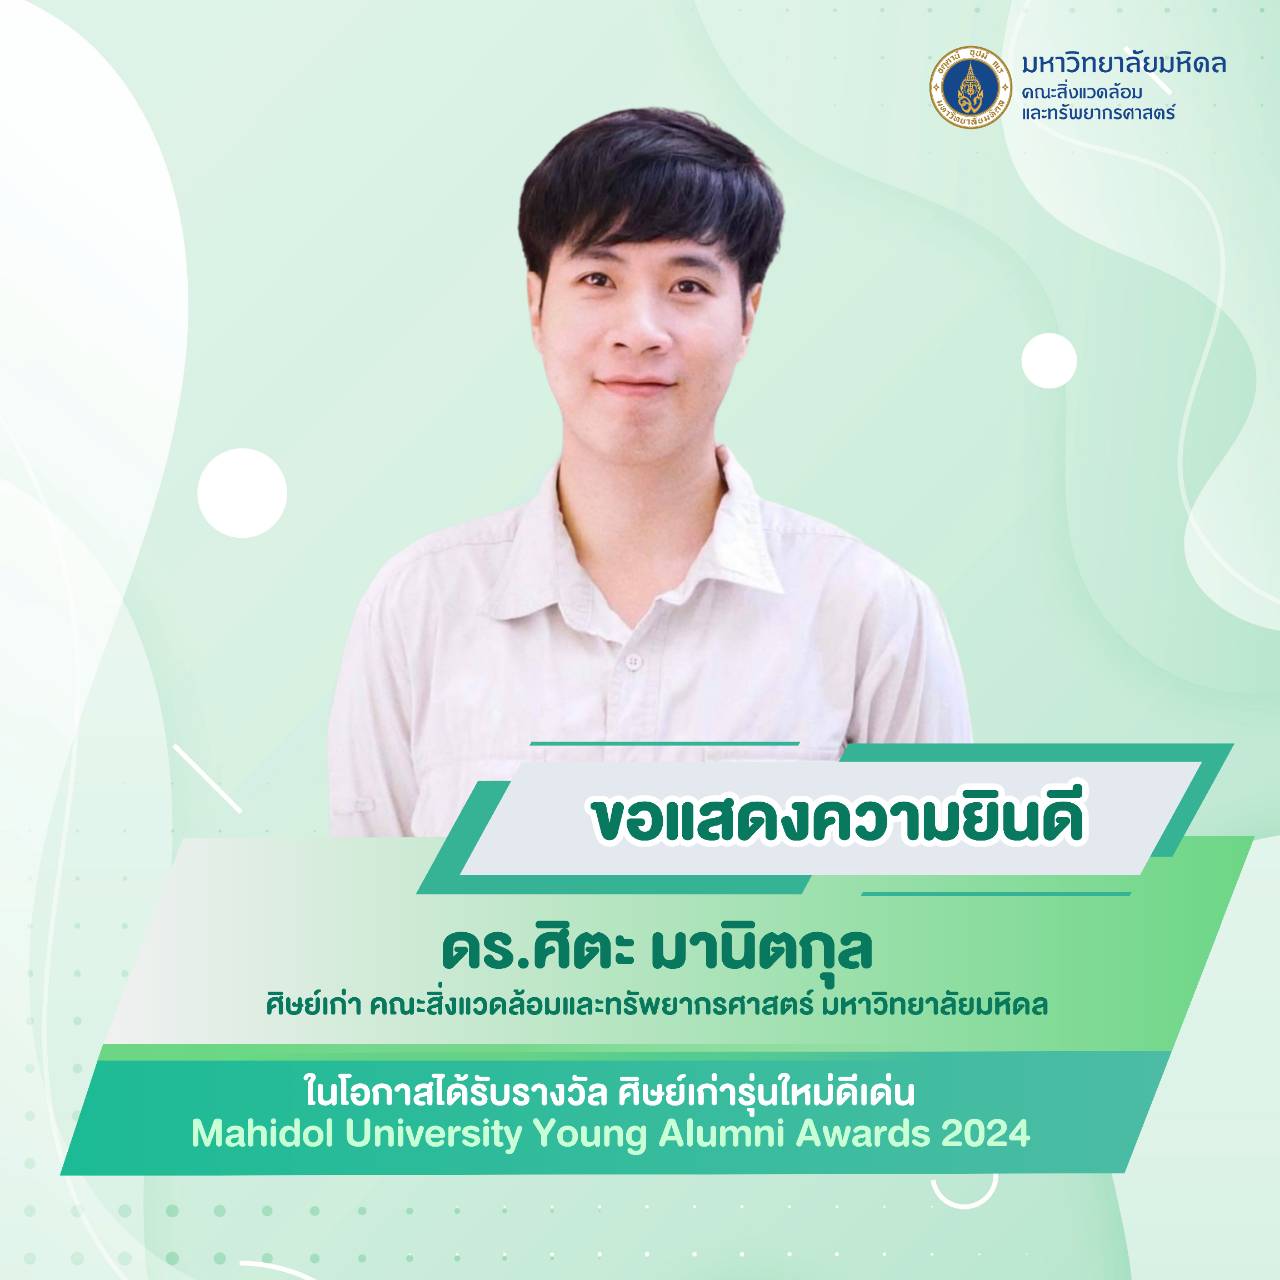 รางวัล ศิษย์เก่ารุ่นใหม่ดีเด่น : Mahidol University Young Alumni Awards 2024